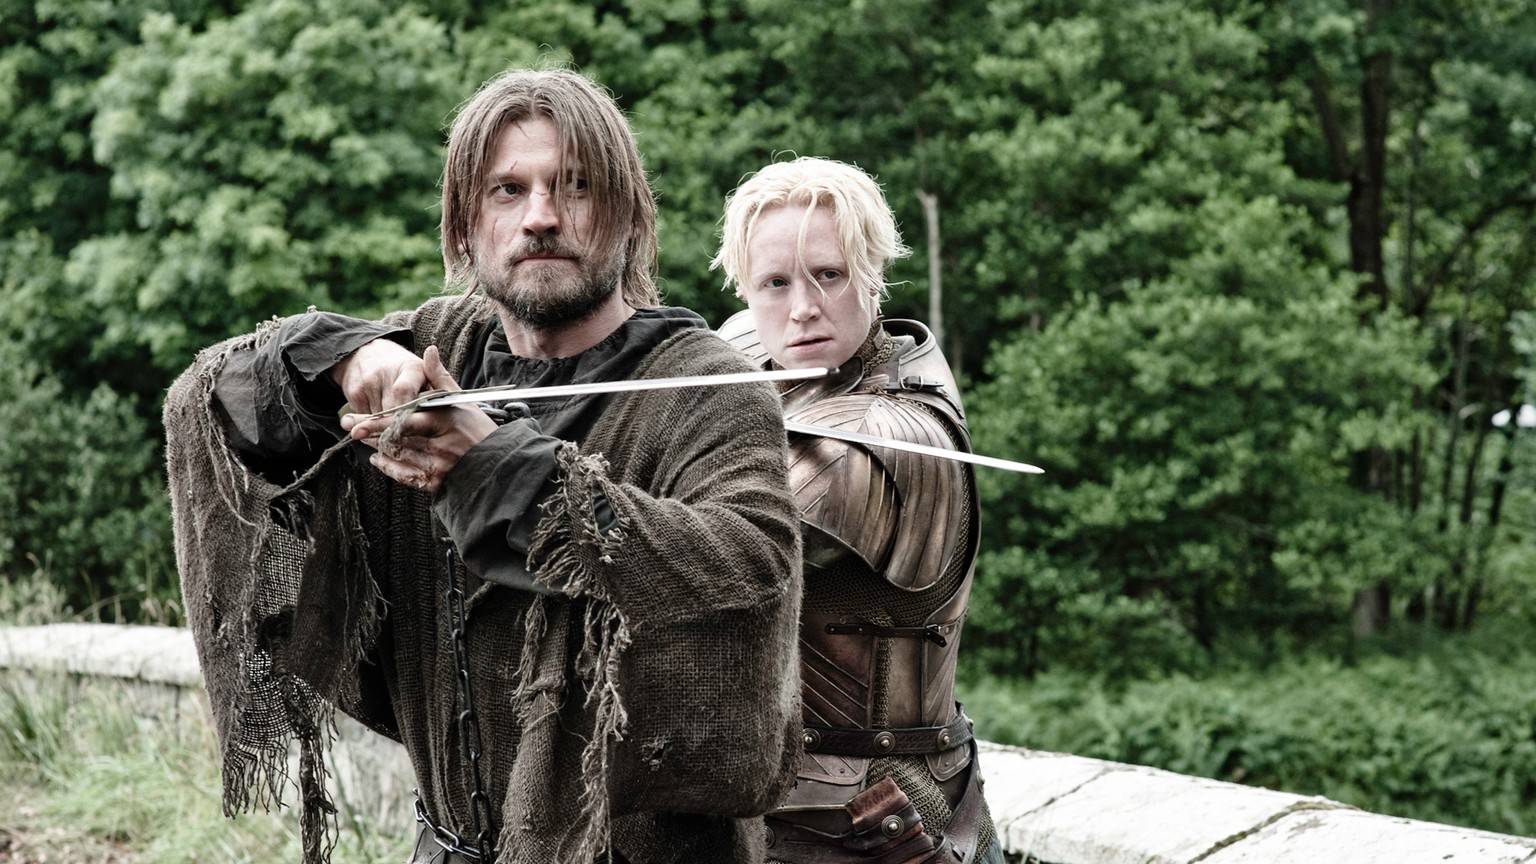 Jaime und Brienne
Game of Thrones